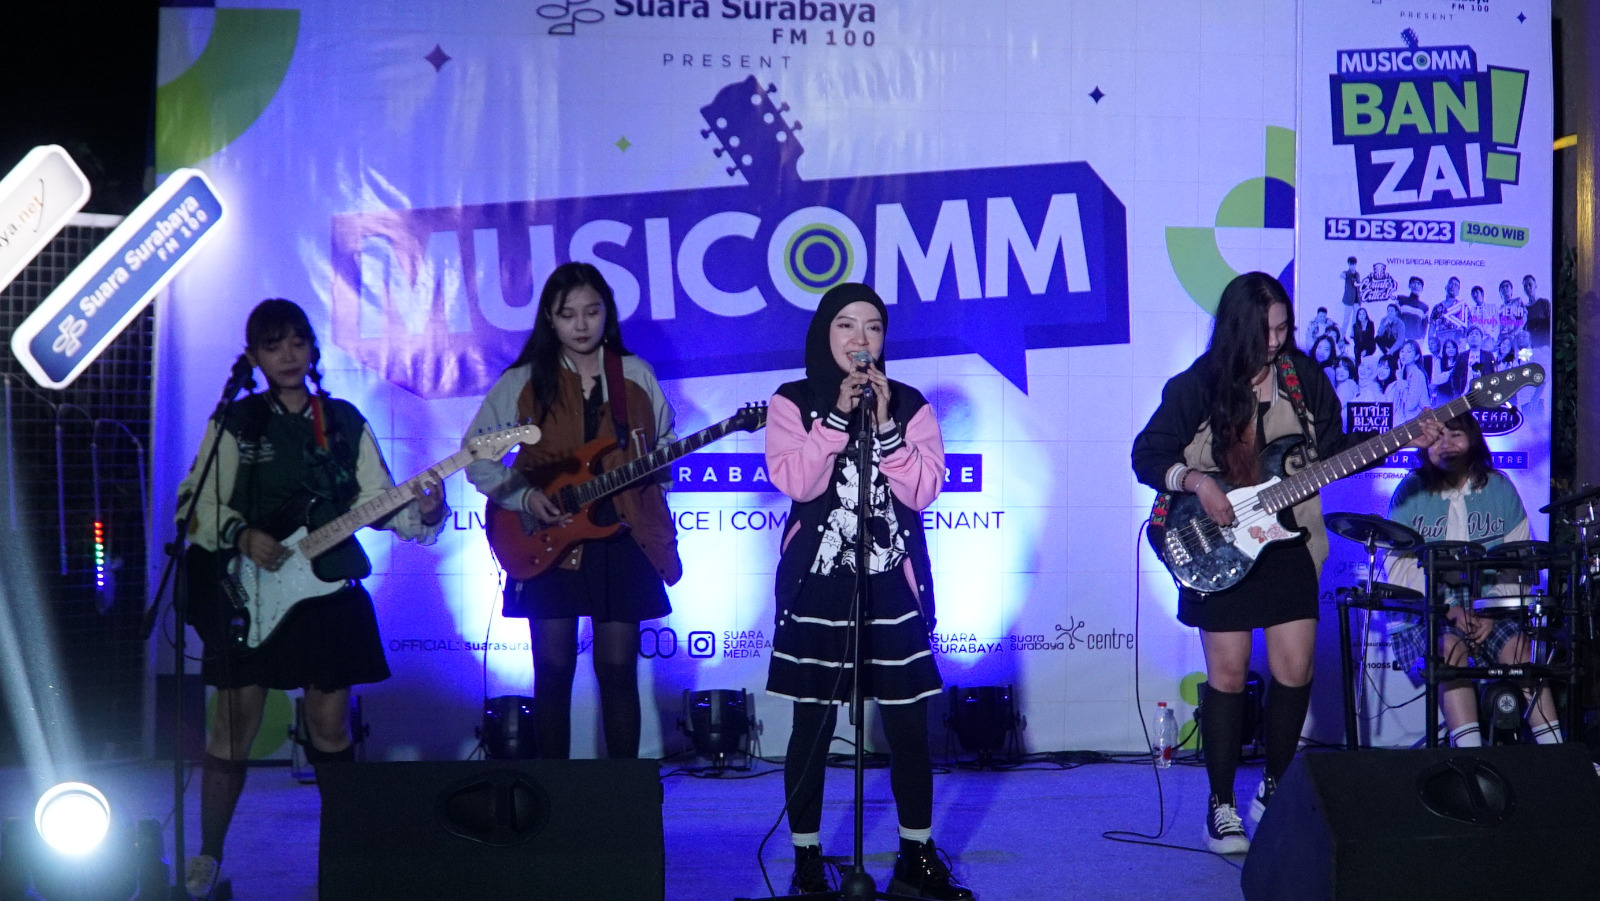 Penampilan Little Black Cherry dalam agenda Musicomm: Banzai! di Suara Surabaya Centre, Jumat (14/12/2023). Foto: Dukut Suara Surabaya